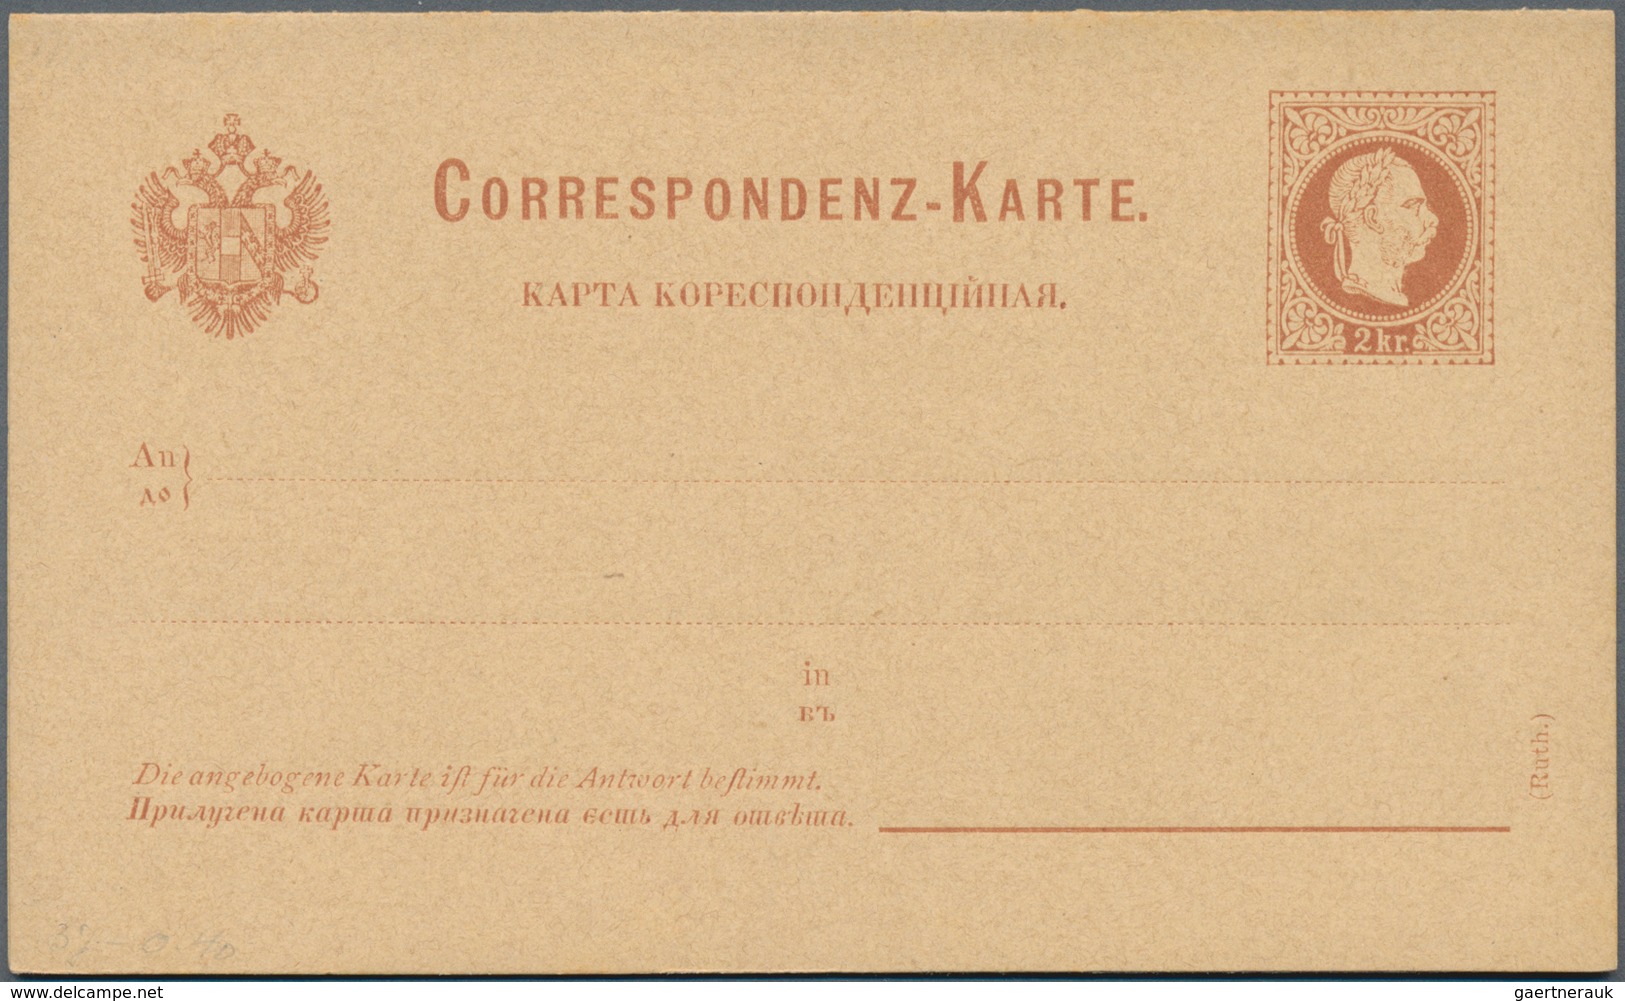 Österreich - Ganzsachen: 1864/1990, immenser Karton mit über 1600 Ganzsachen aller Arten incl. Priva